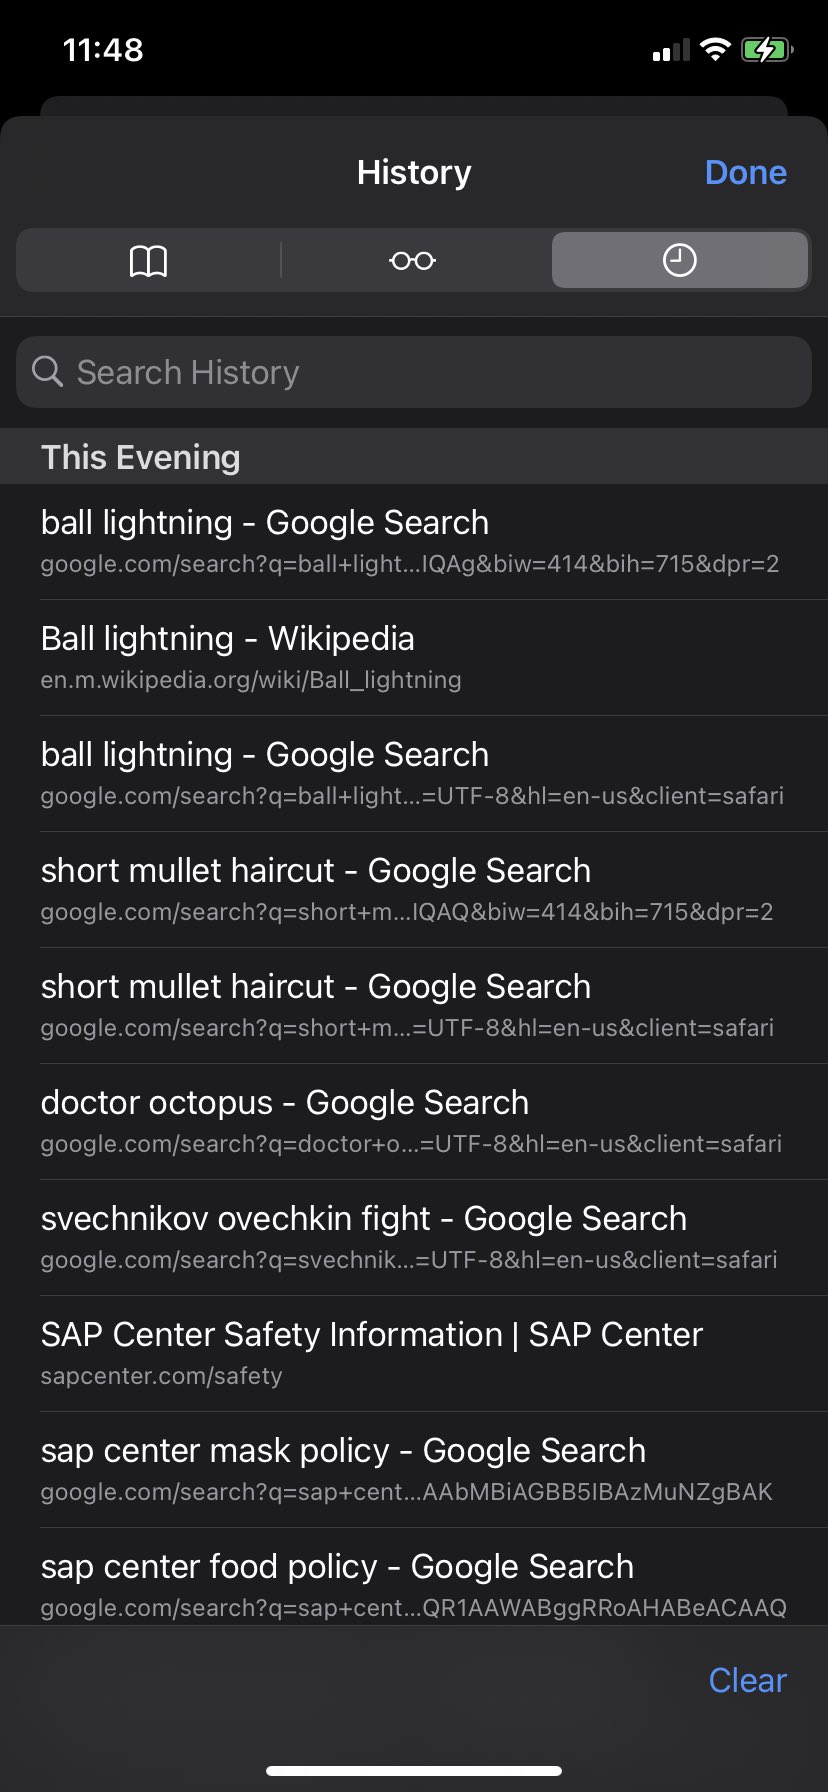 Ball lightning - Wikipedia